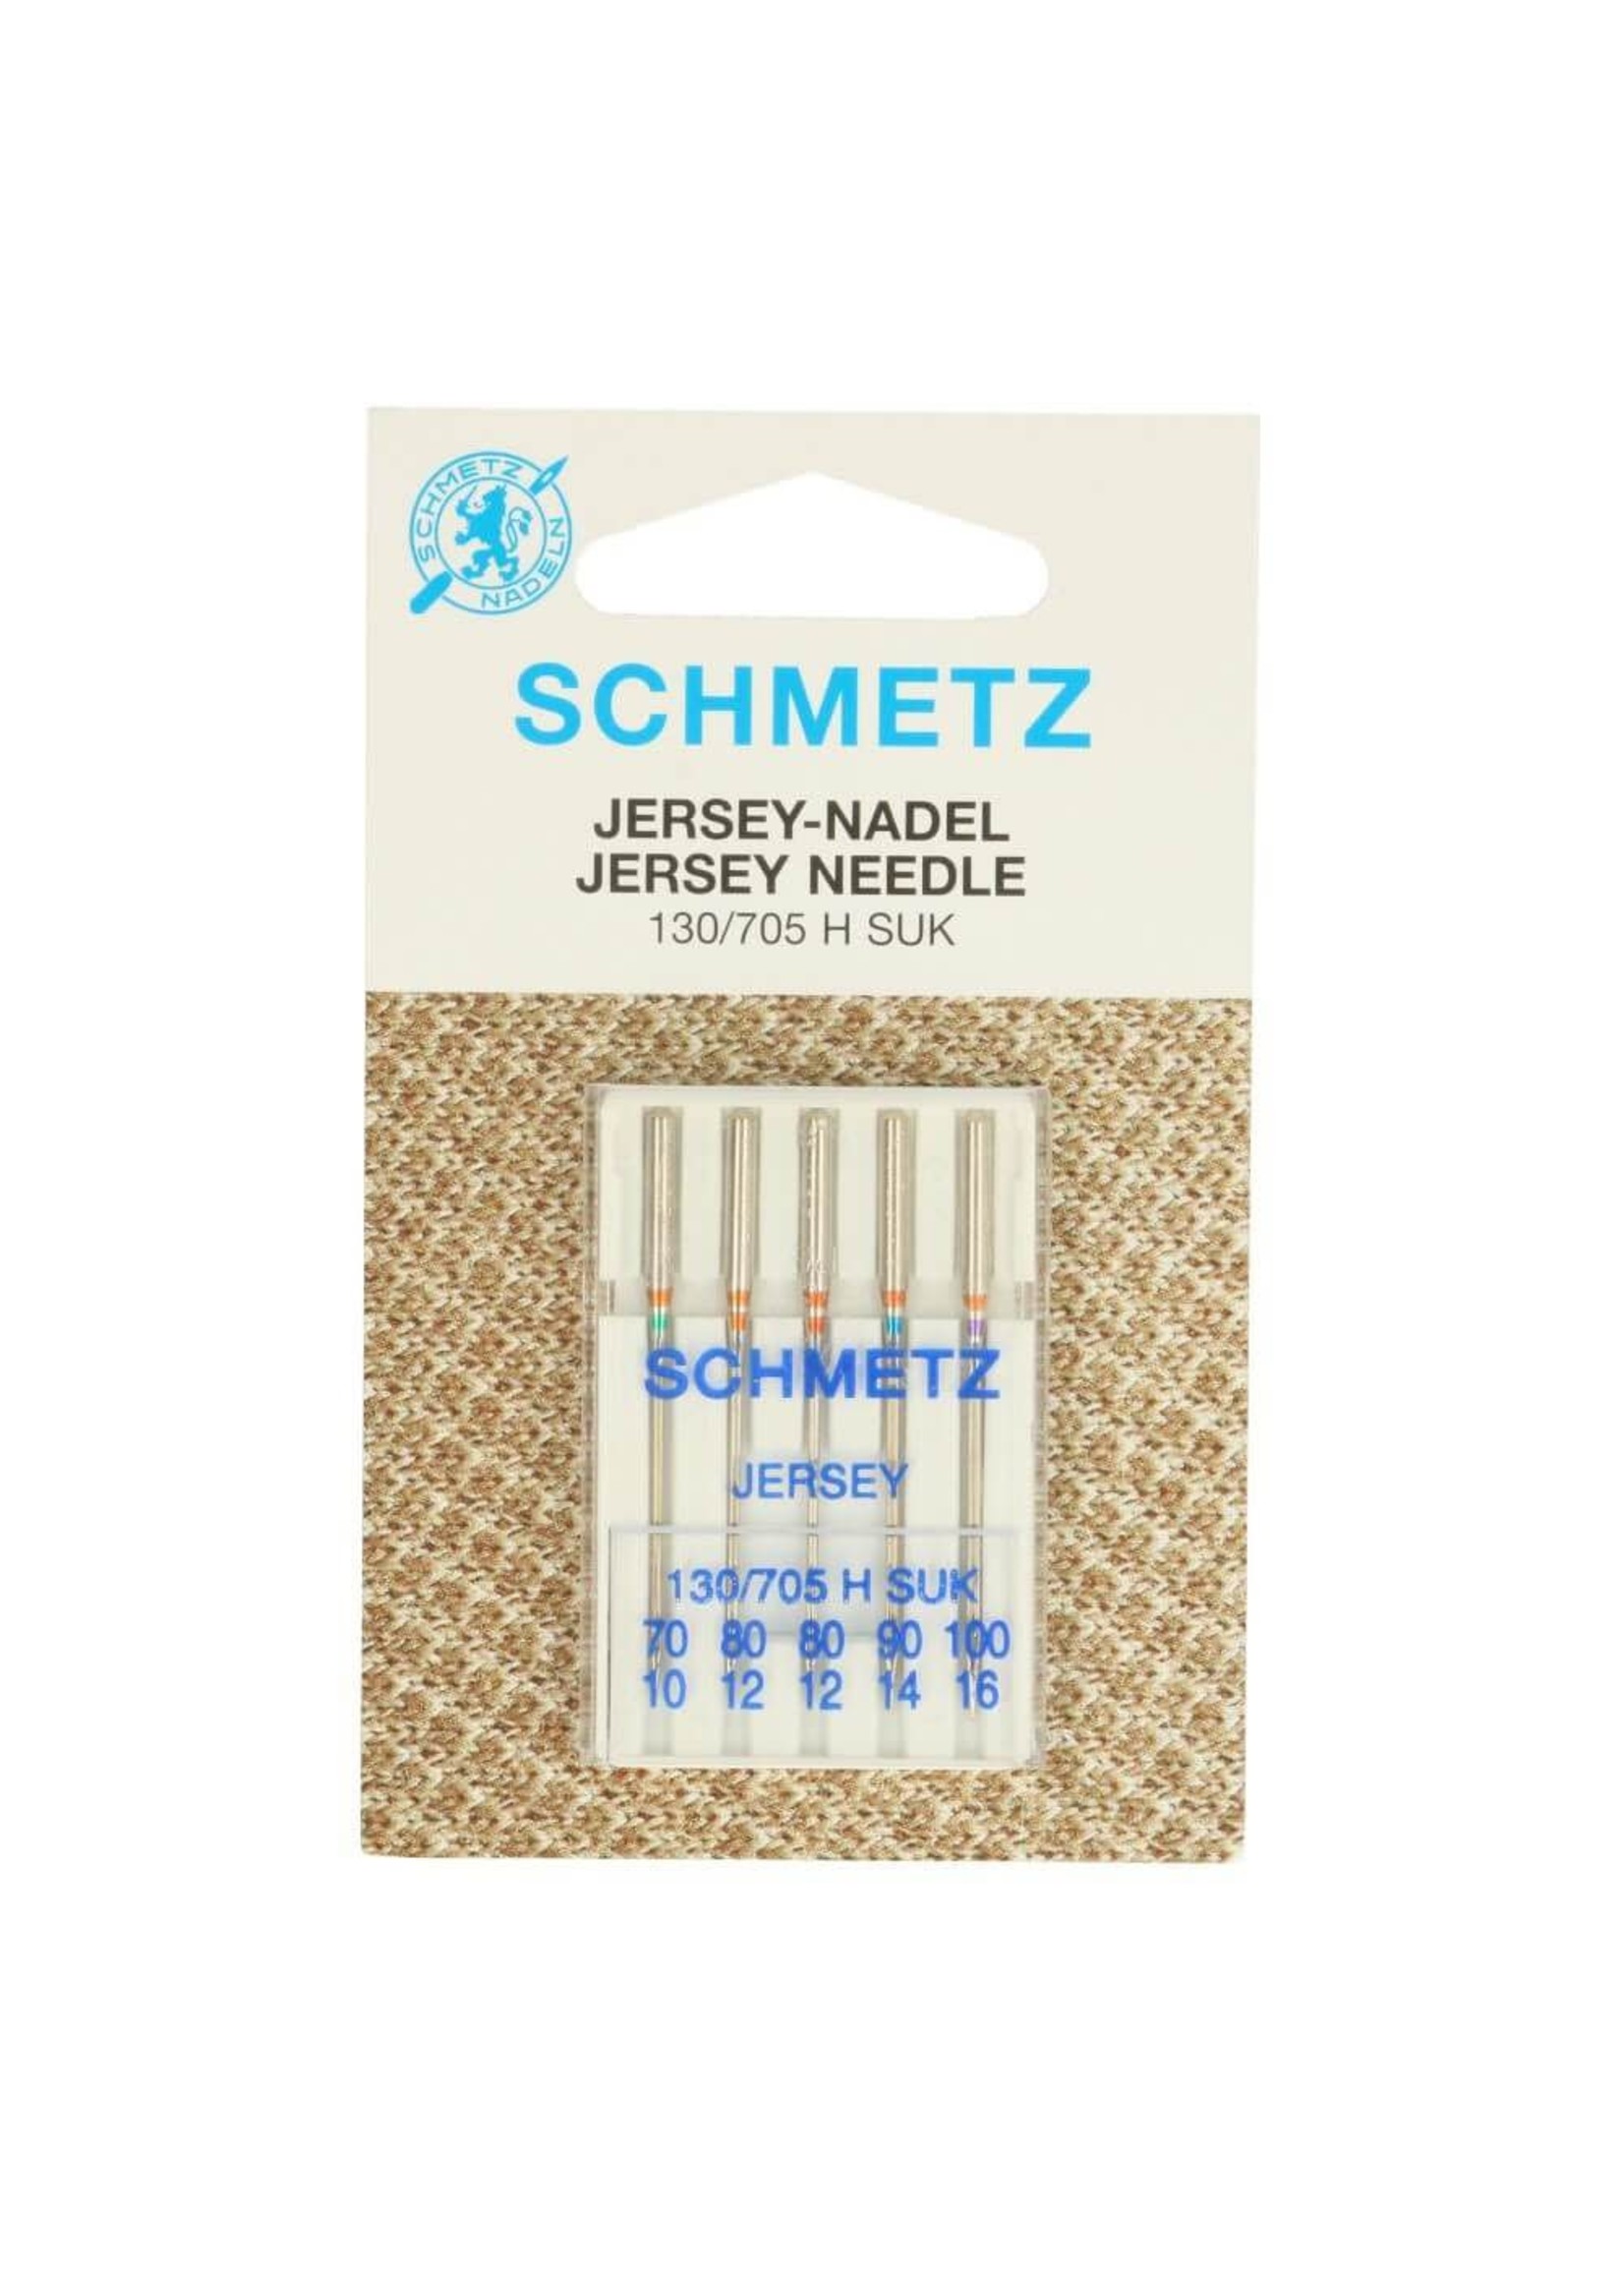 Schmetz Schmetz Jersey 70-100 - 5 naalden